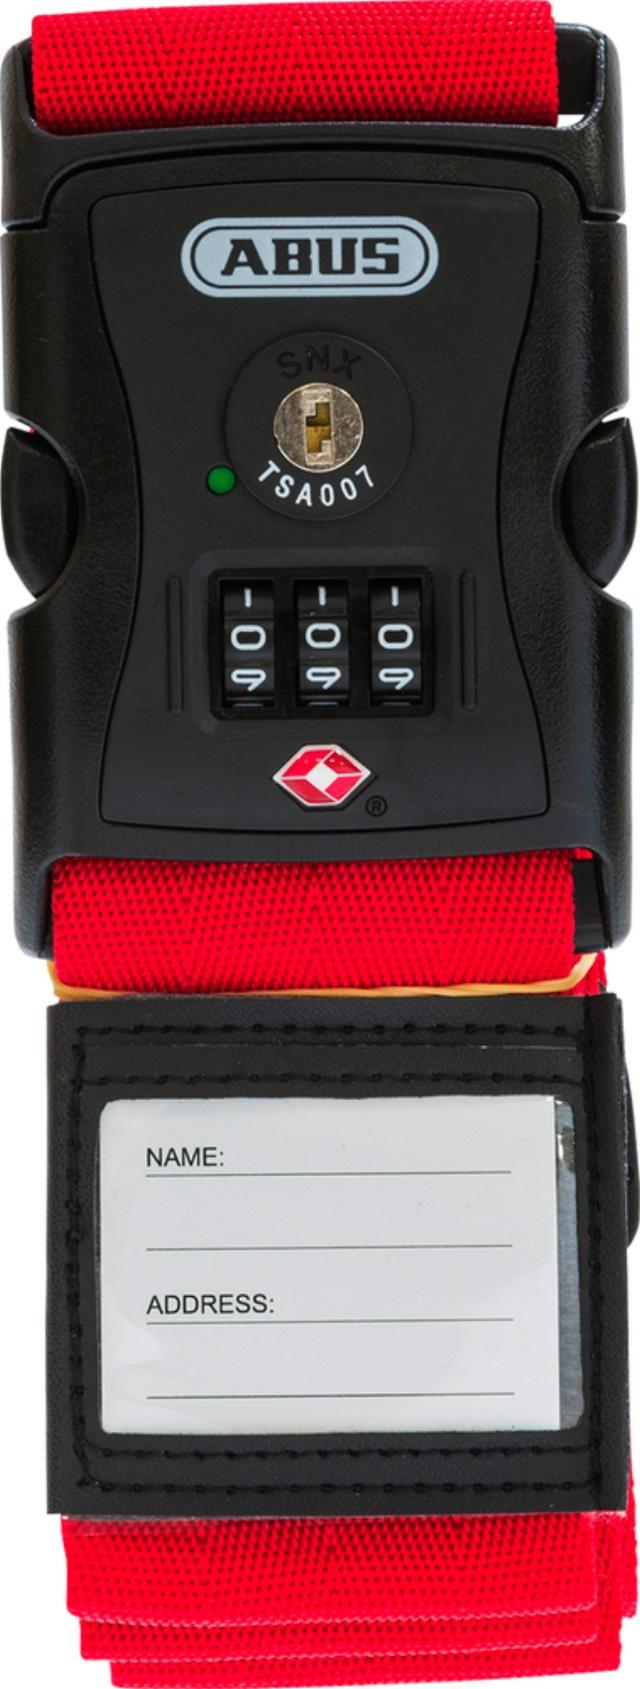 ABUS koffertstropp med kodelås og TSA Rød